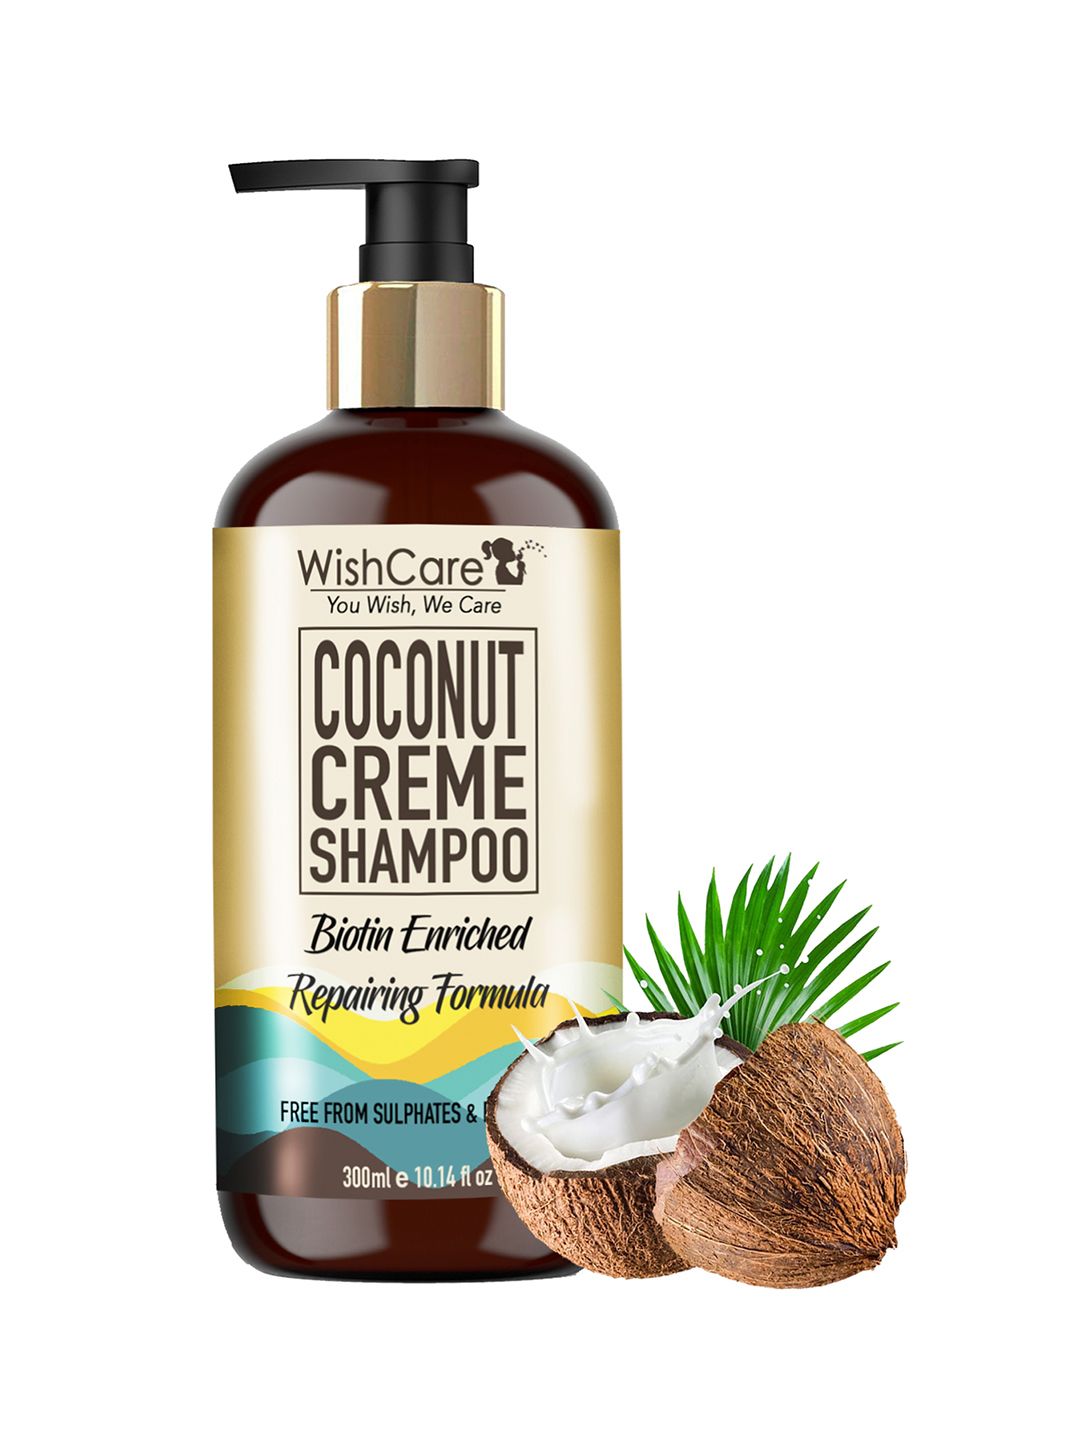 WishCare Unisex Coconut Creme Repairing Formula Shampoo 300ml Price in India